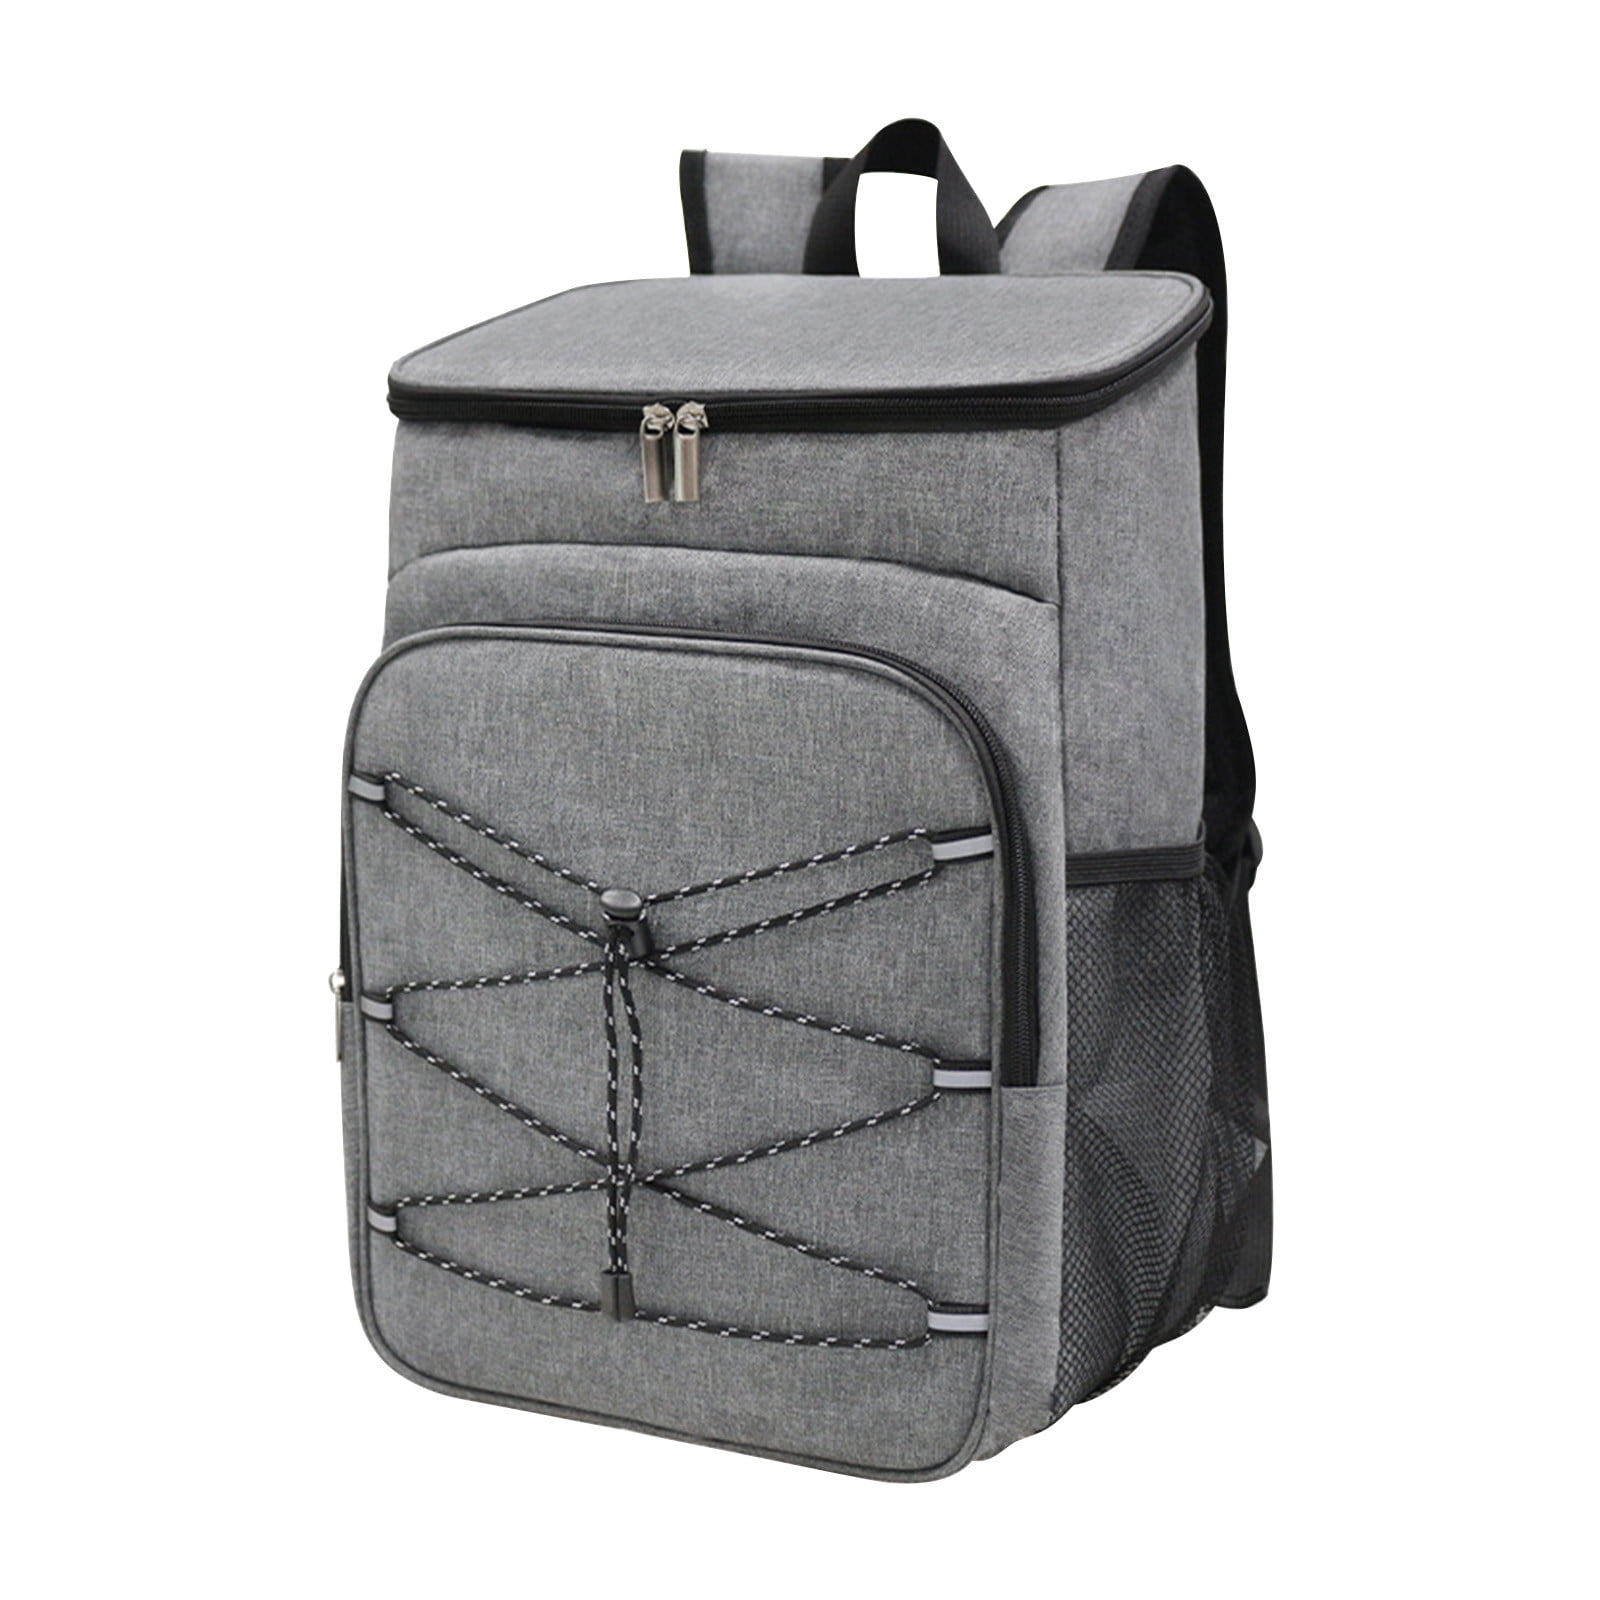 Cooler Bag Picnic Backpack, Shoulder Insulation Bag Oxford Cloth